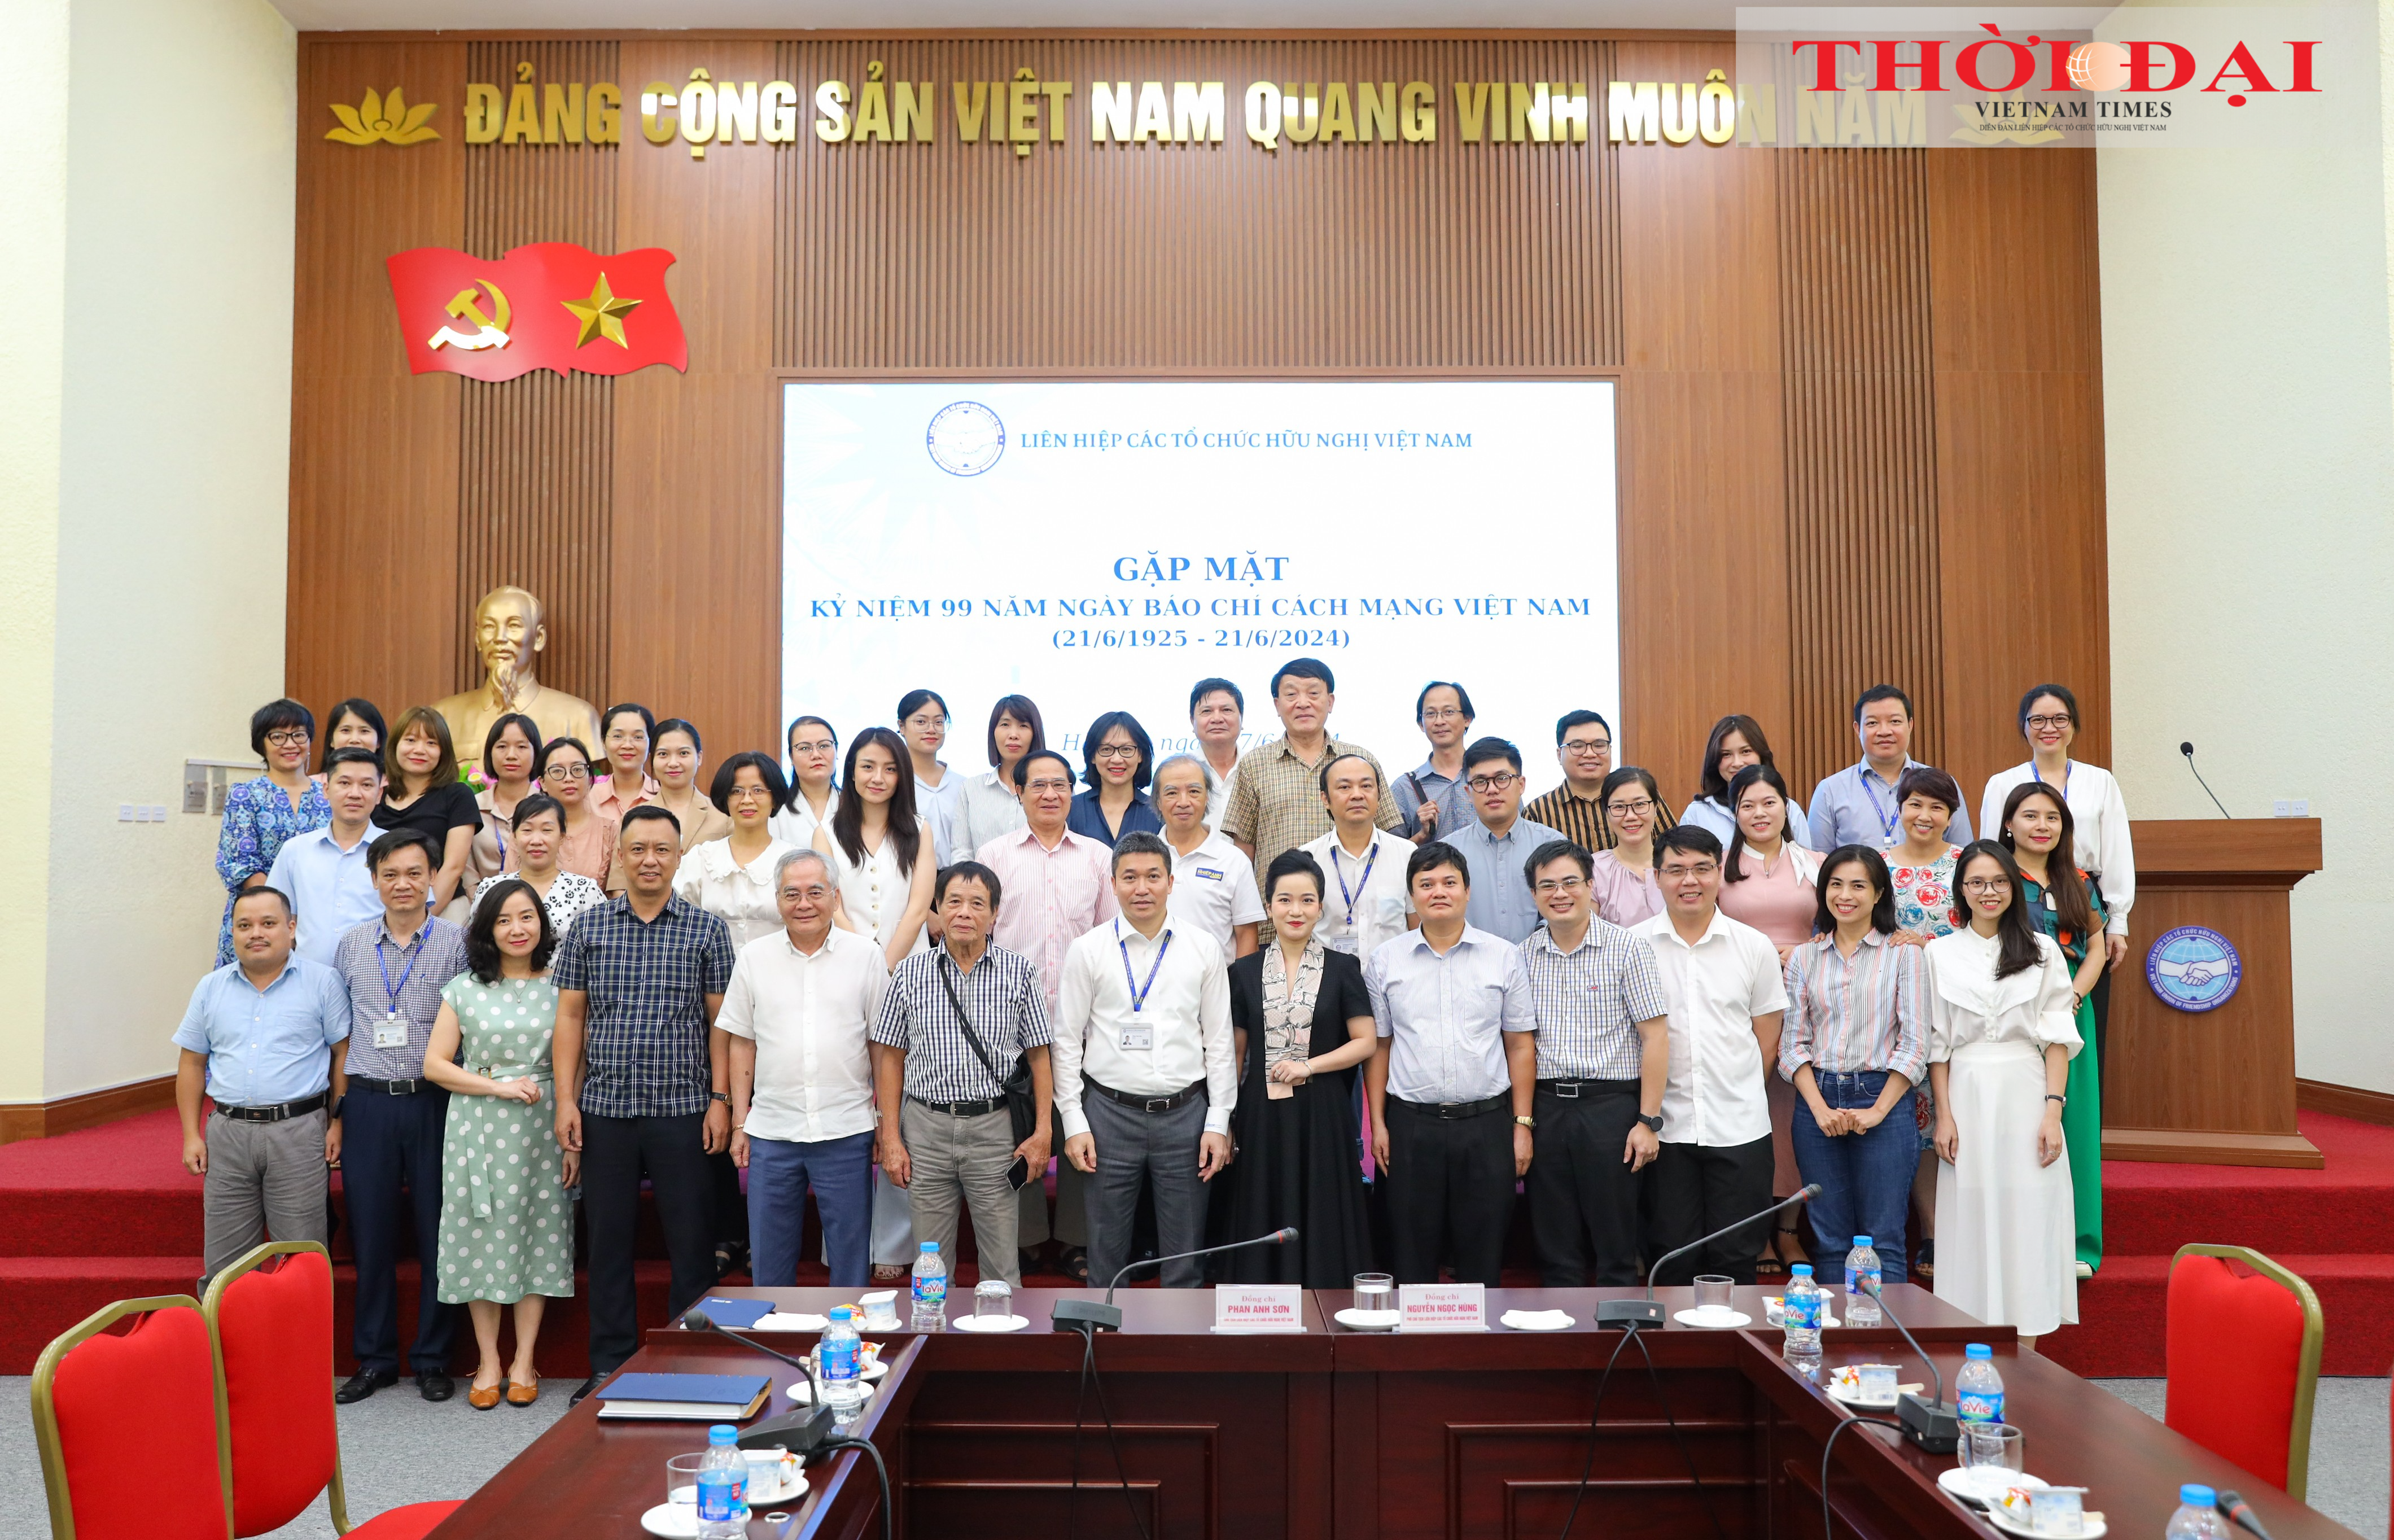 Lãnh đạo Liên hiệp các tổ chức hữu nghị Việt Nam chụp ảnh lưu niệm cùng đại diện các cơ quan báo chí. (Ảnh: Đinh Hòa)